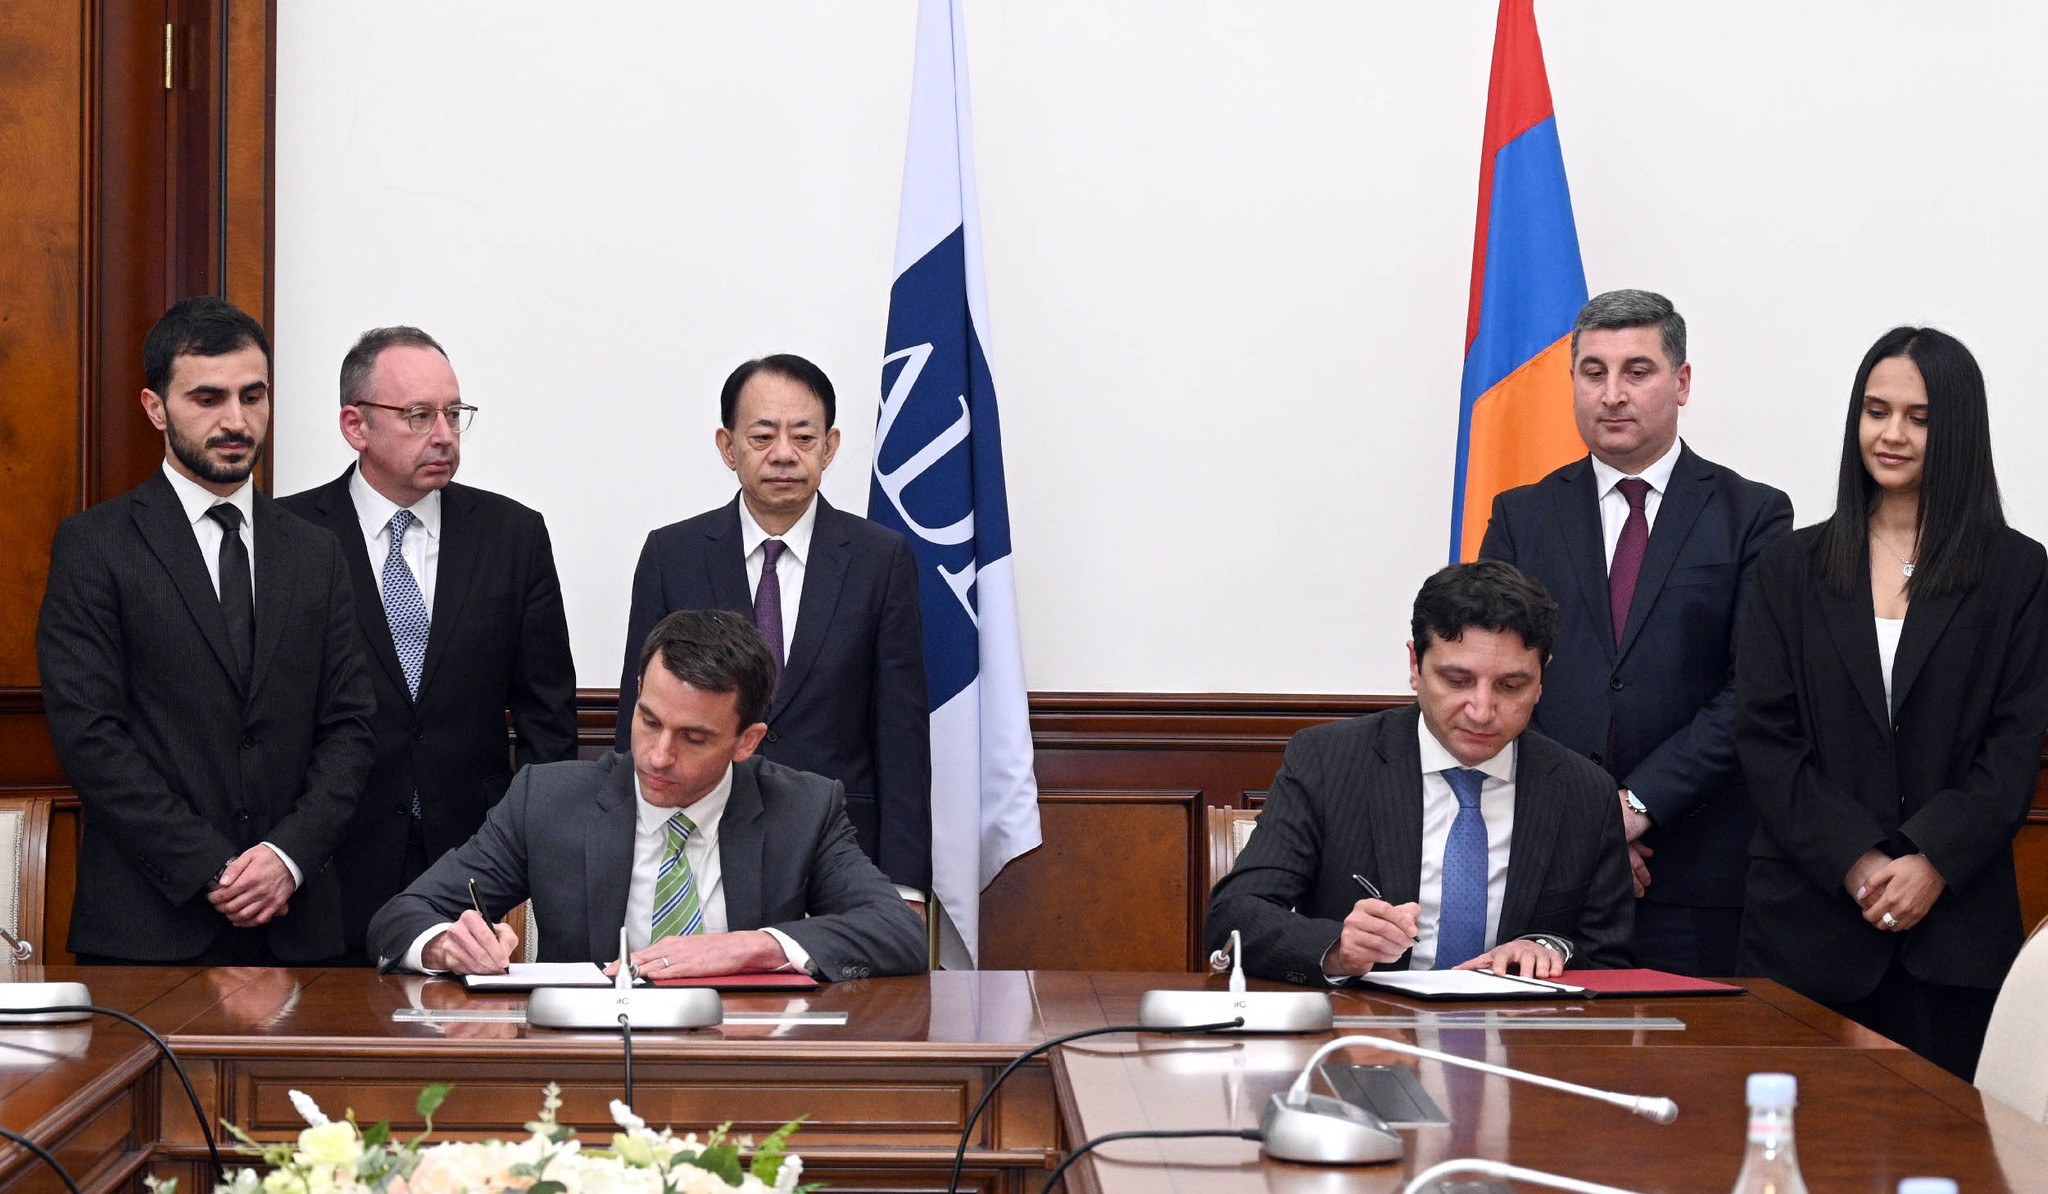 Ստորագրվել է «Սեյսմիկ անվտանգության բարելավման ծրագիր» վարկային համաձայնագիրը ՀՀ-ի և ԱԶԲ-ի միջև